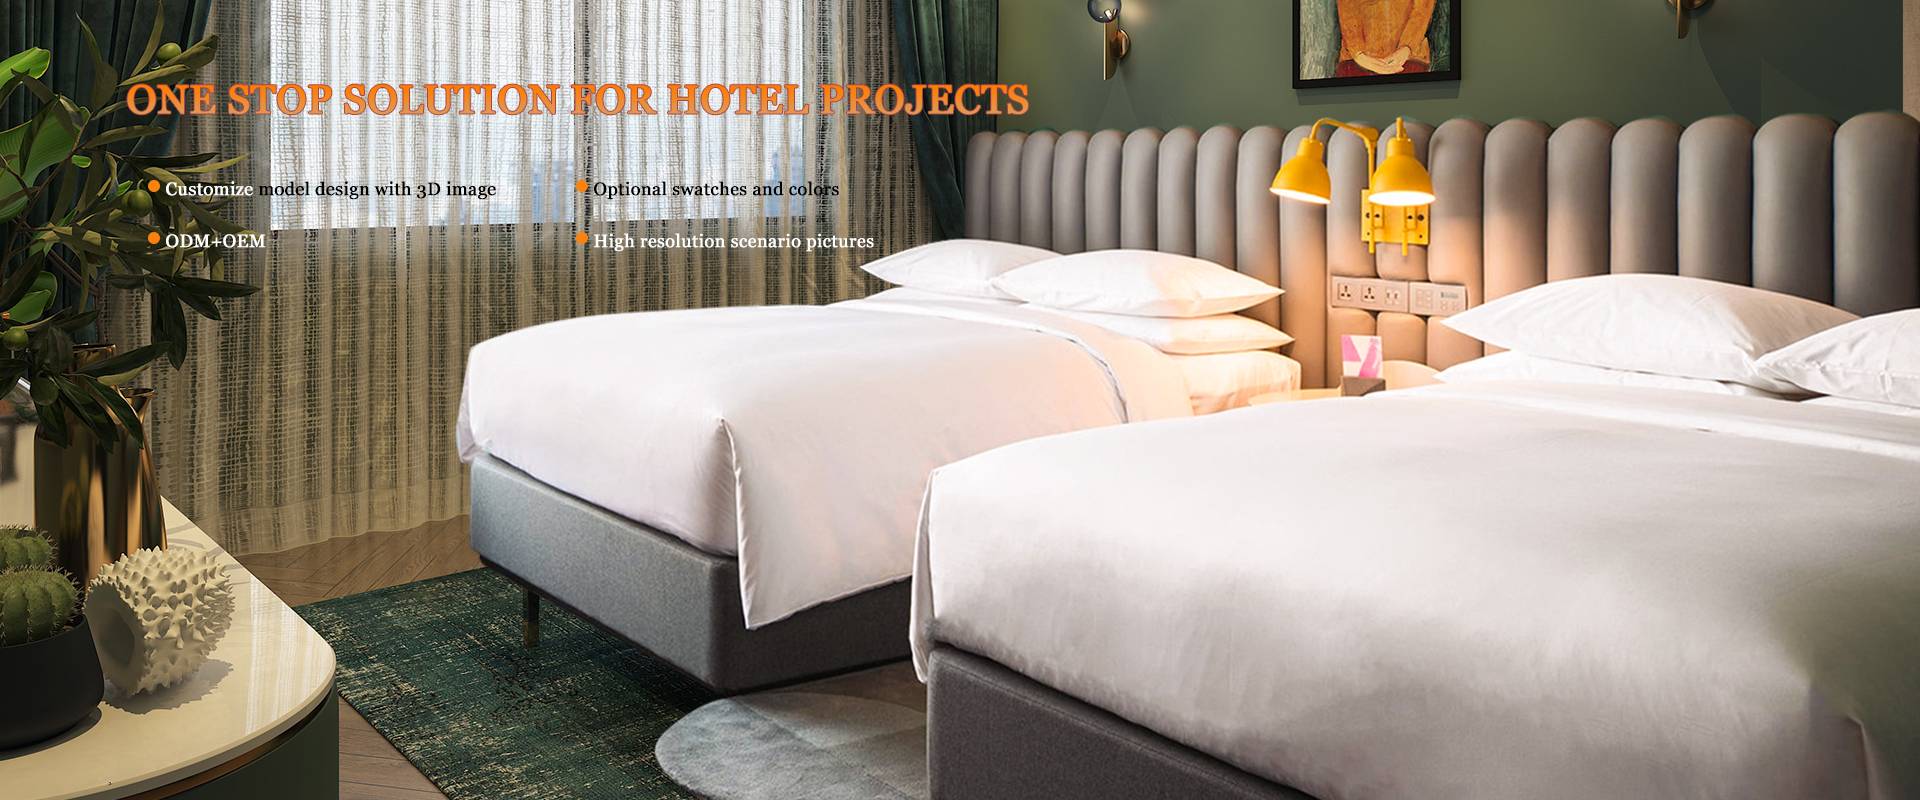 Super king size hotel upholstered beds